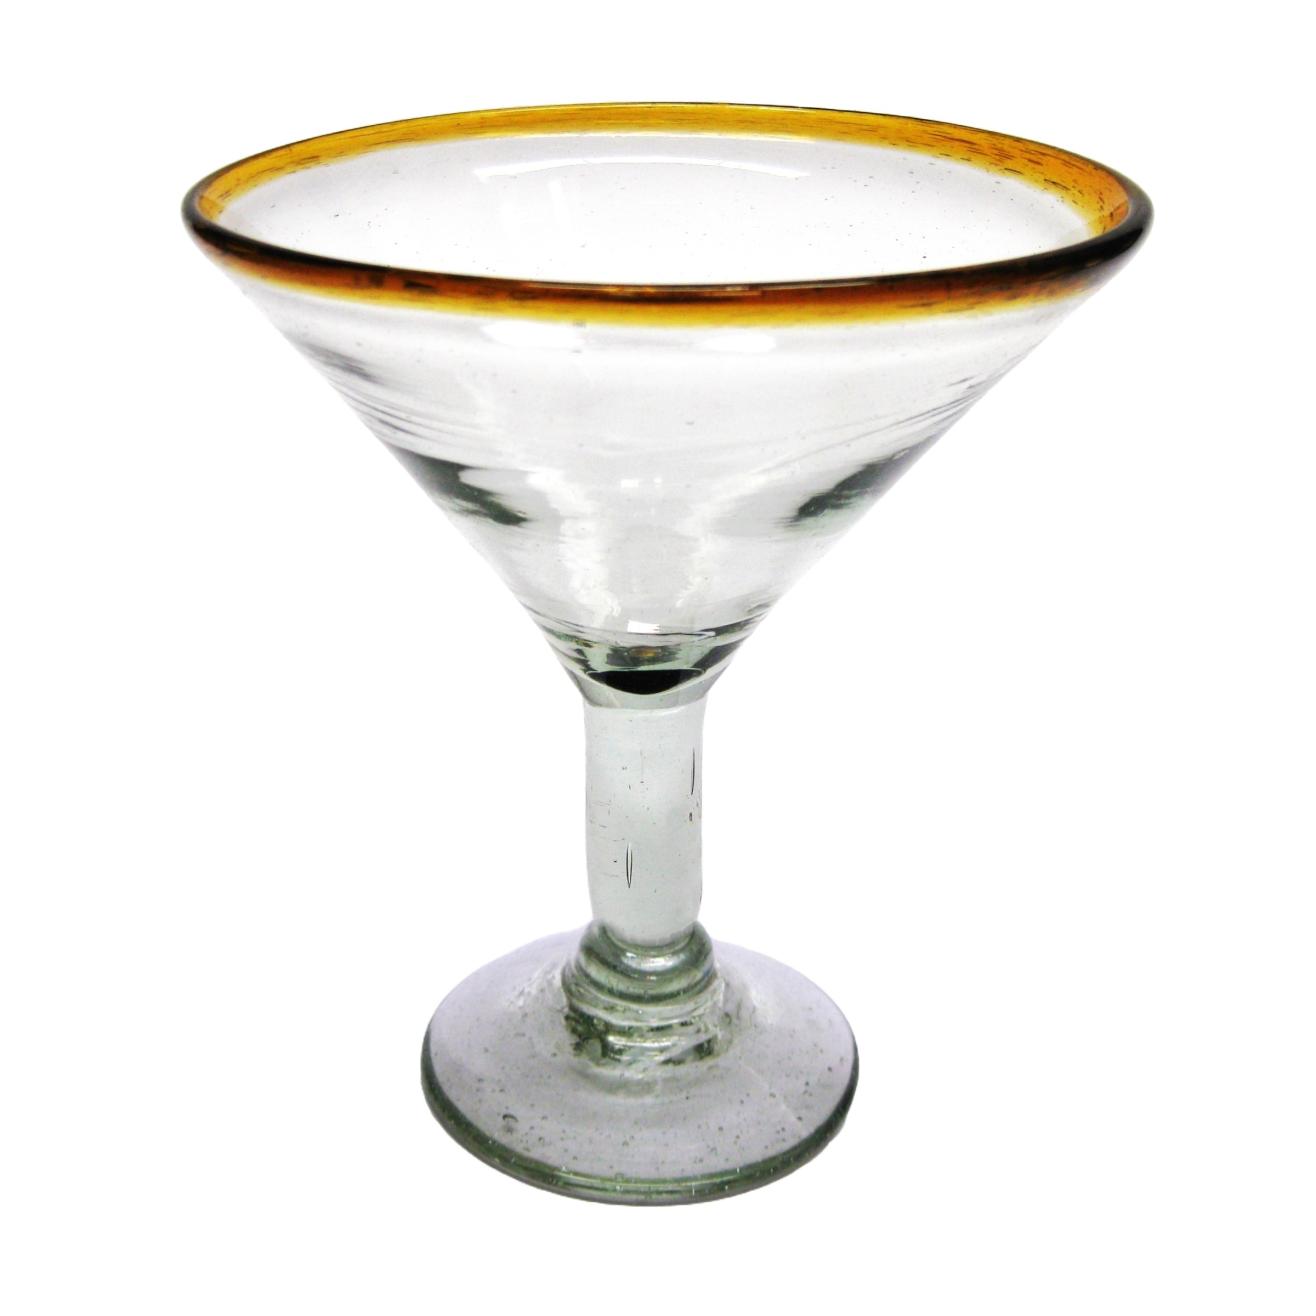 Borde Color Ambar al Mayoreo / copas para martini con borde color mbar / ste hermoso juego de copas para martini le dar un toque clsico mexicano a sus fiestas.